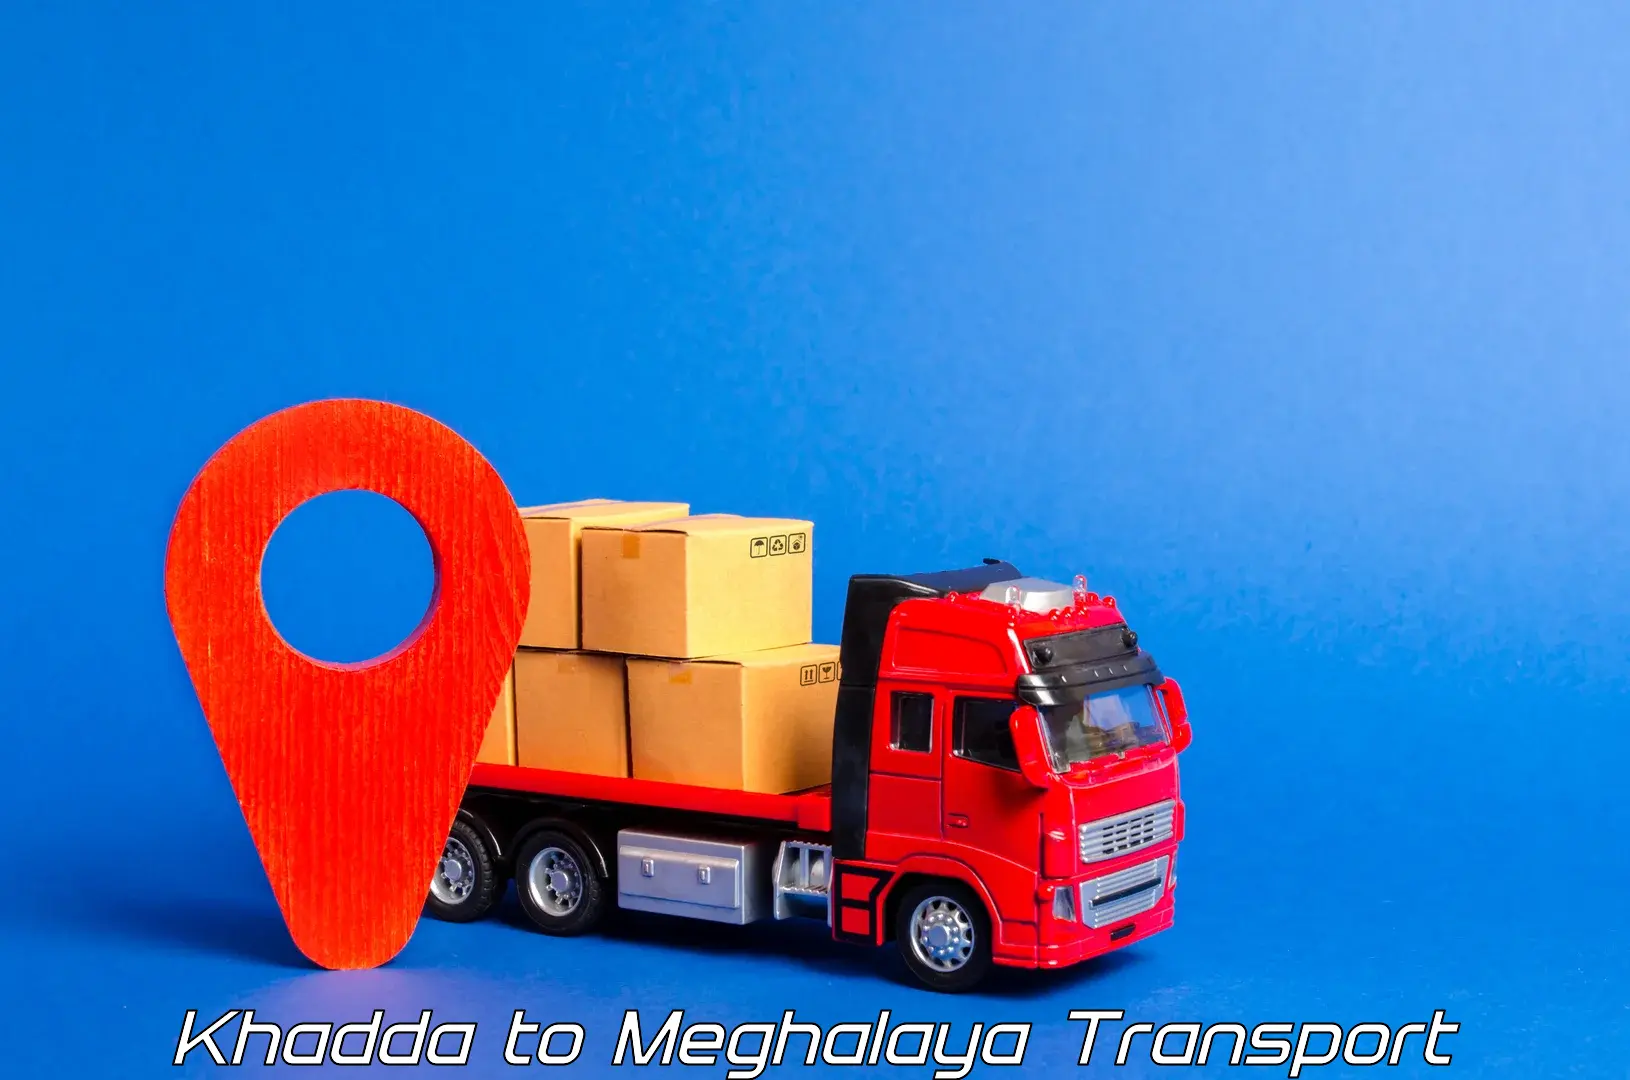 Daily transport service Khadda to Tura